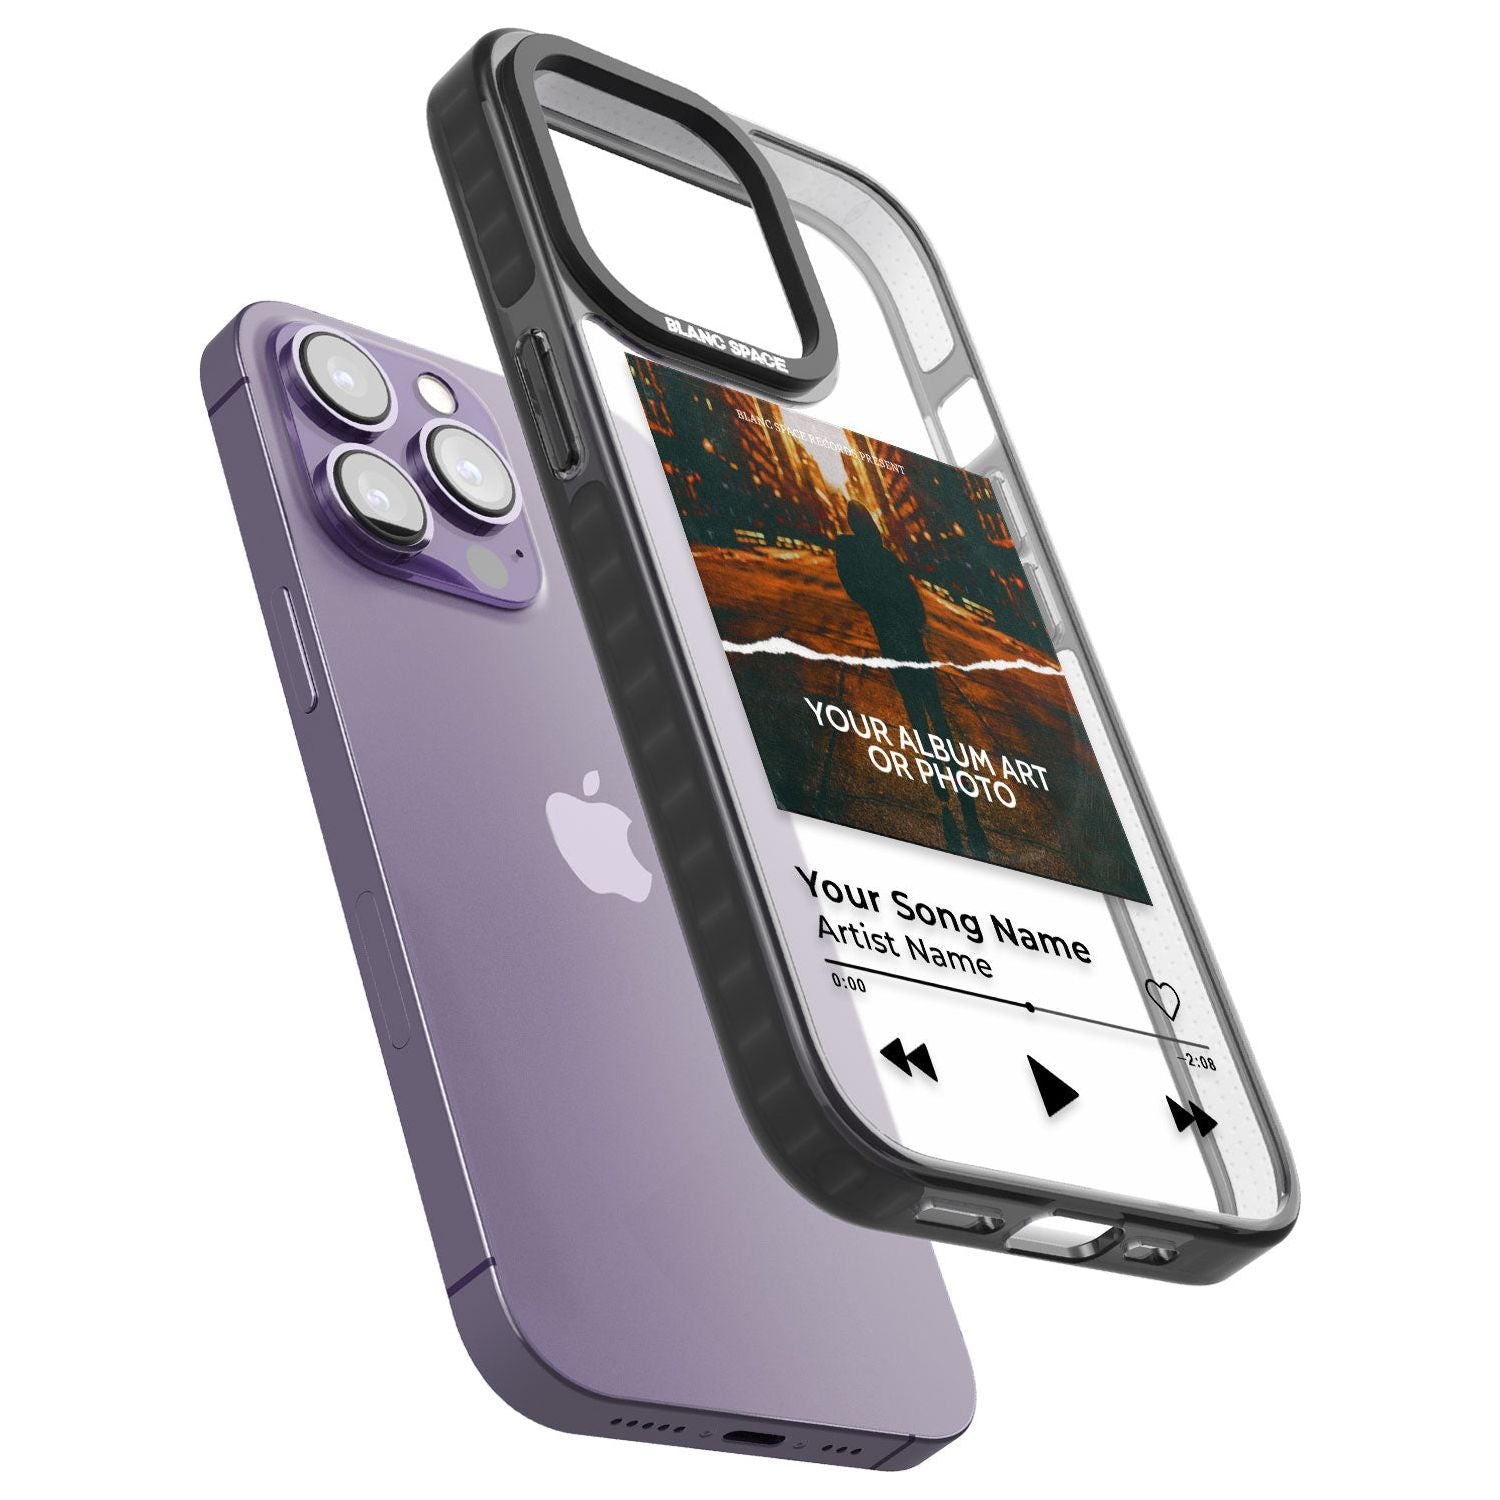 Personalised Album Art Phone Case for iPhone 14 Pro